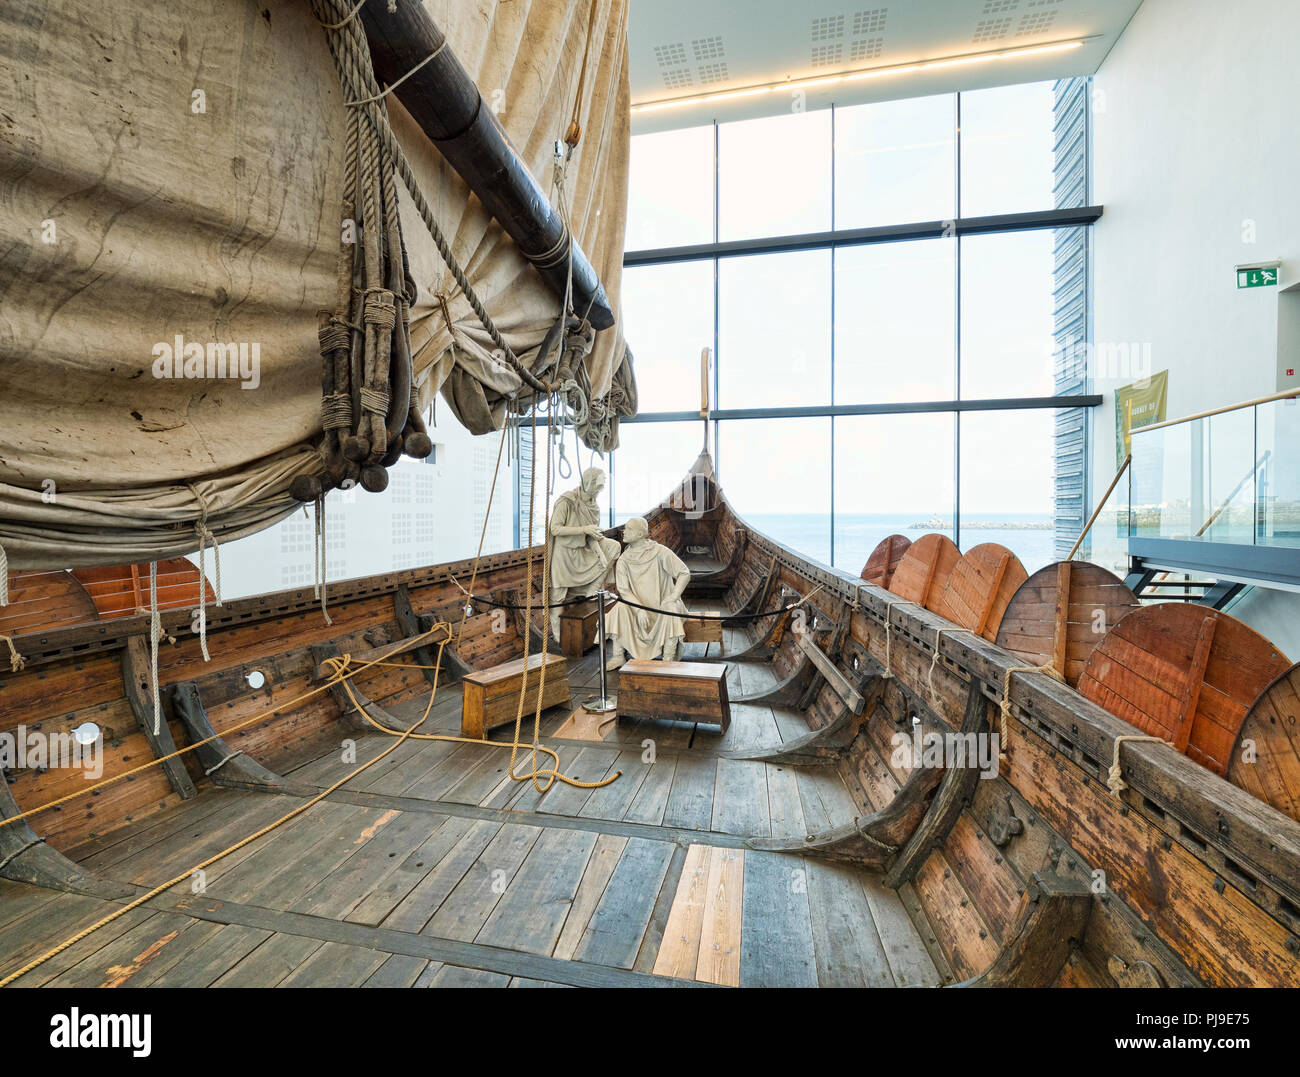 18 avril 2018 : Keflavik, Islande - à bord de l'Islendingur, une réplique de la navire Viking Gokstad au monde Viking museum. Banque D'Images